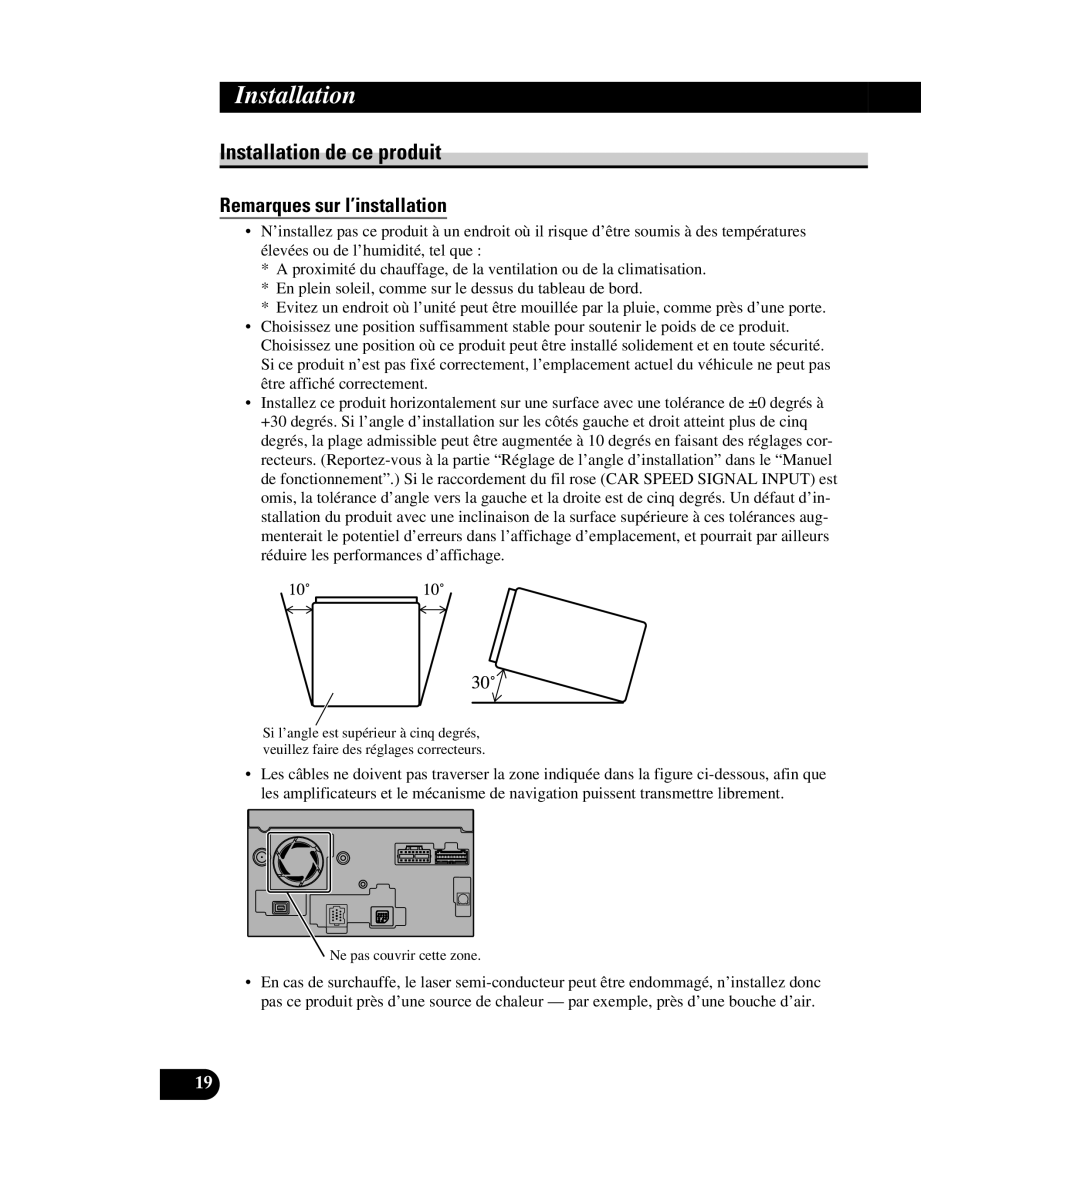 Digital Media AVIC-D1 installation manual Installation de ce produit, Remarques sur l’installation 